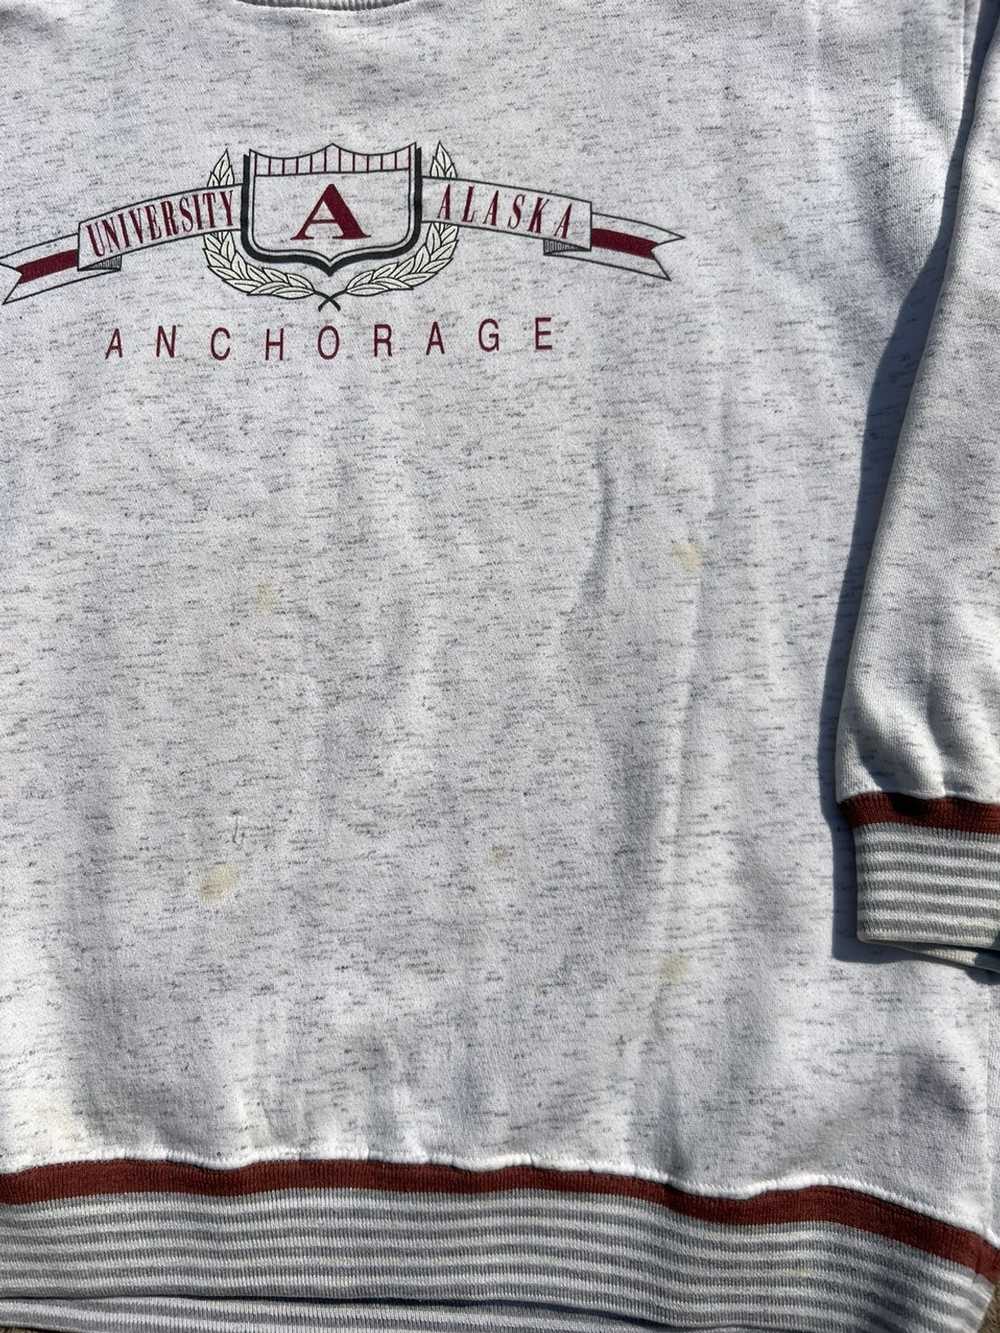 Vintage Vintage University of Alaska Sweatshirt - image 2